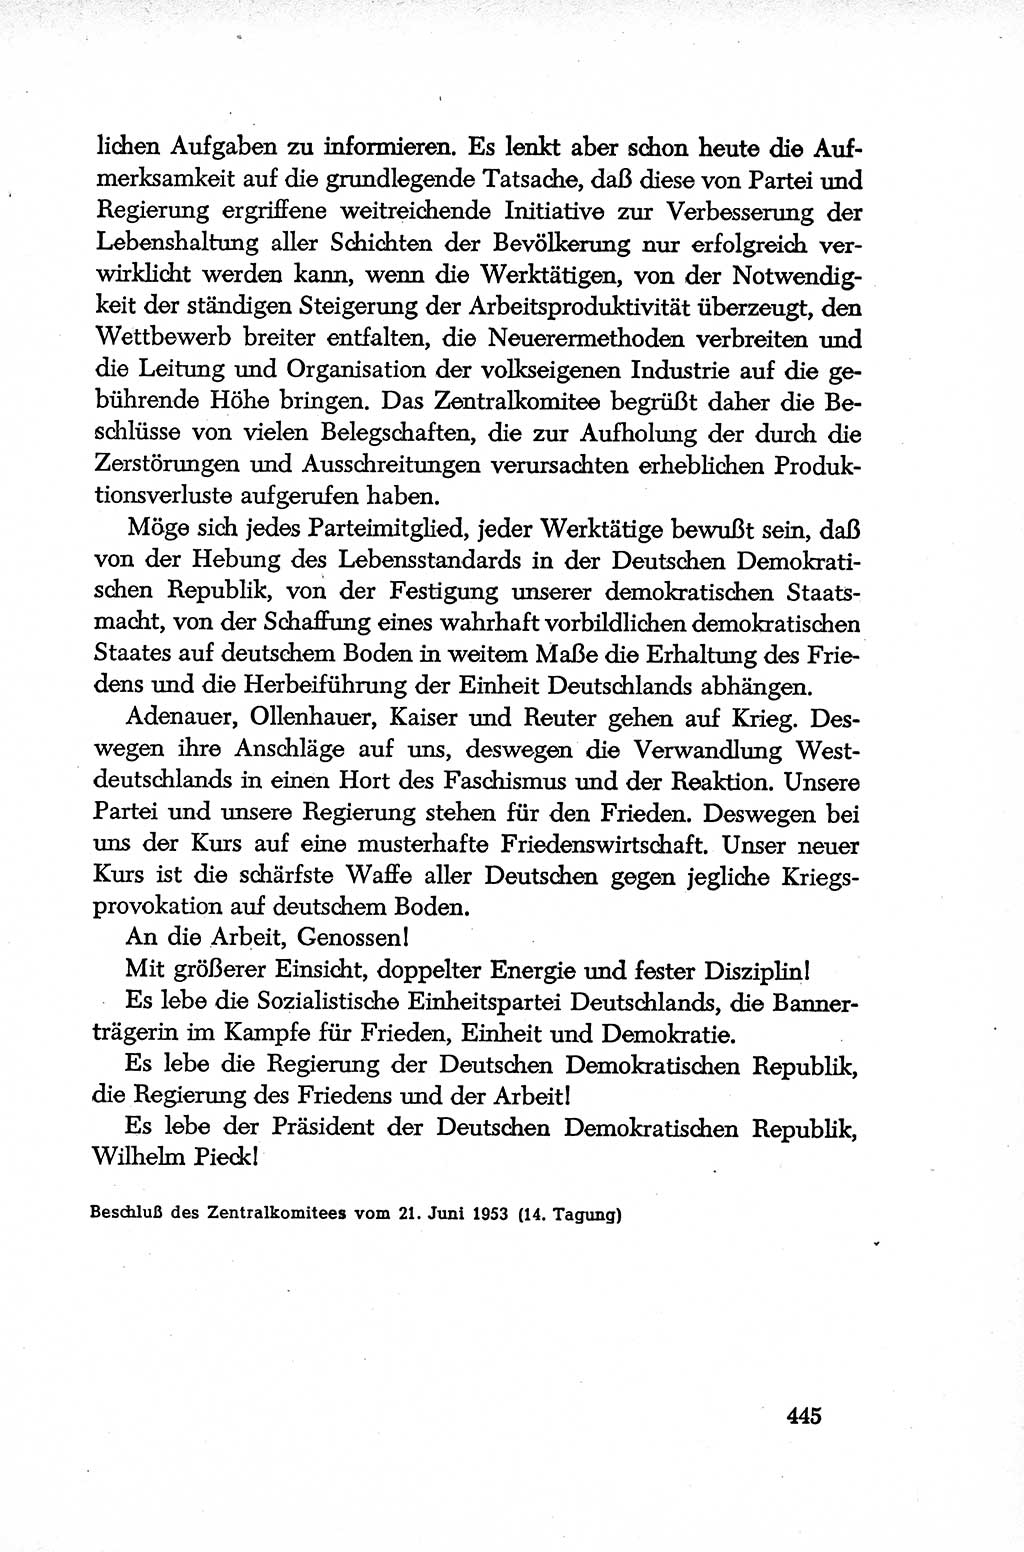 Dokumente der Sozialistischen Einheitspartei Deutschlands (SED) [Deutsche Demokratische Republik (DDR)] 1952-1953, Seite 445 (Dok. SED DDR 1952-1953, S. 445)